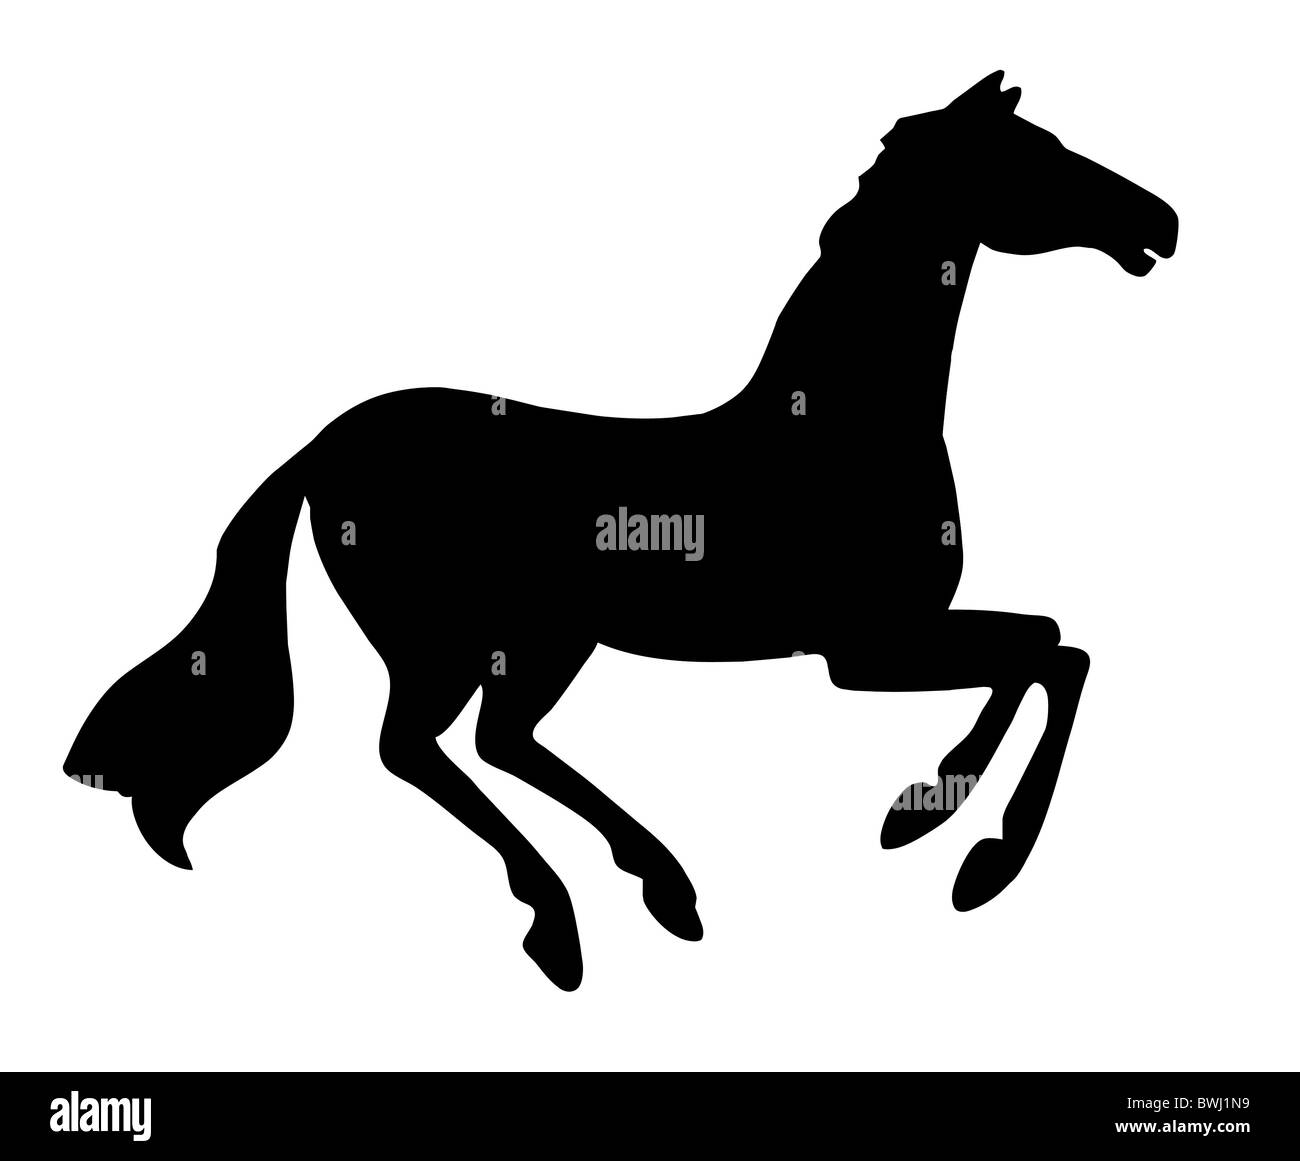 R cheval silhouette sur fond blanc Banque D'Images